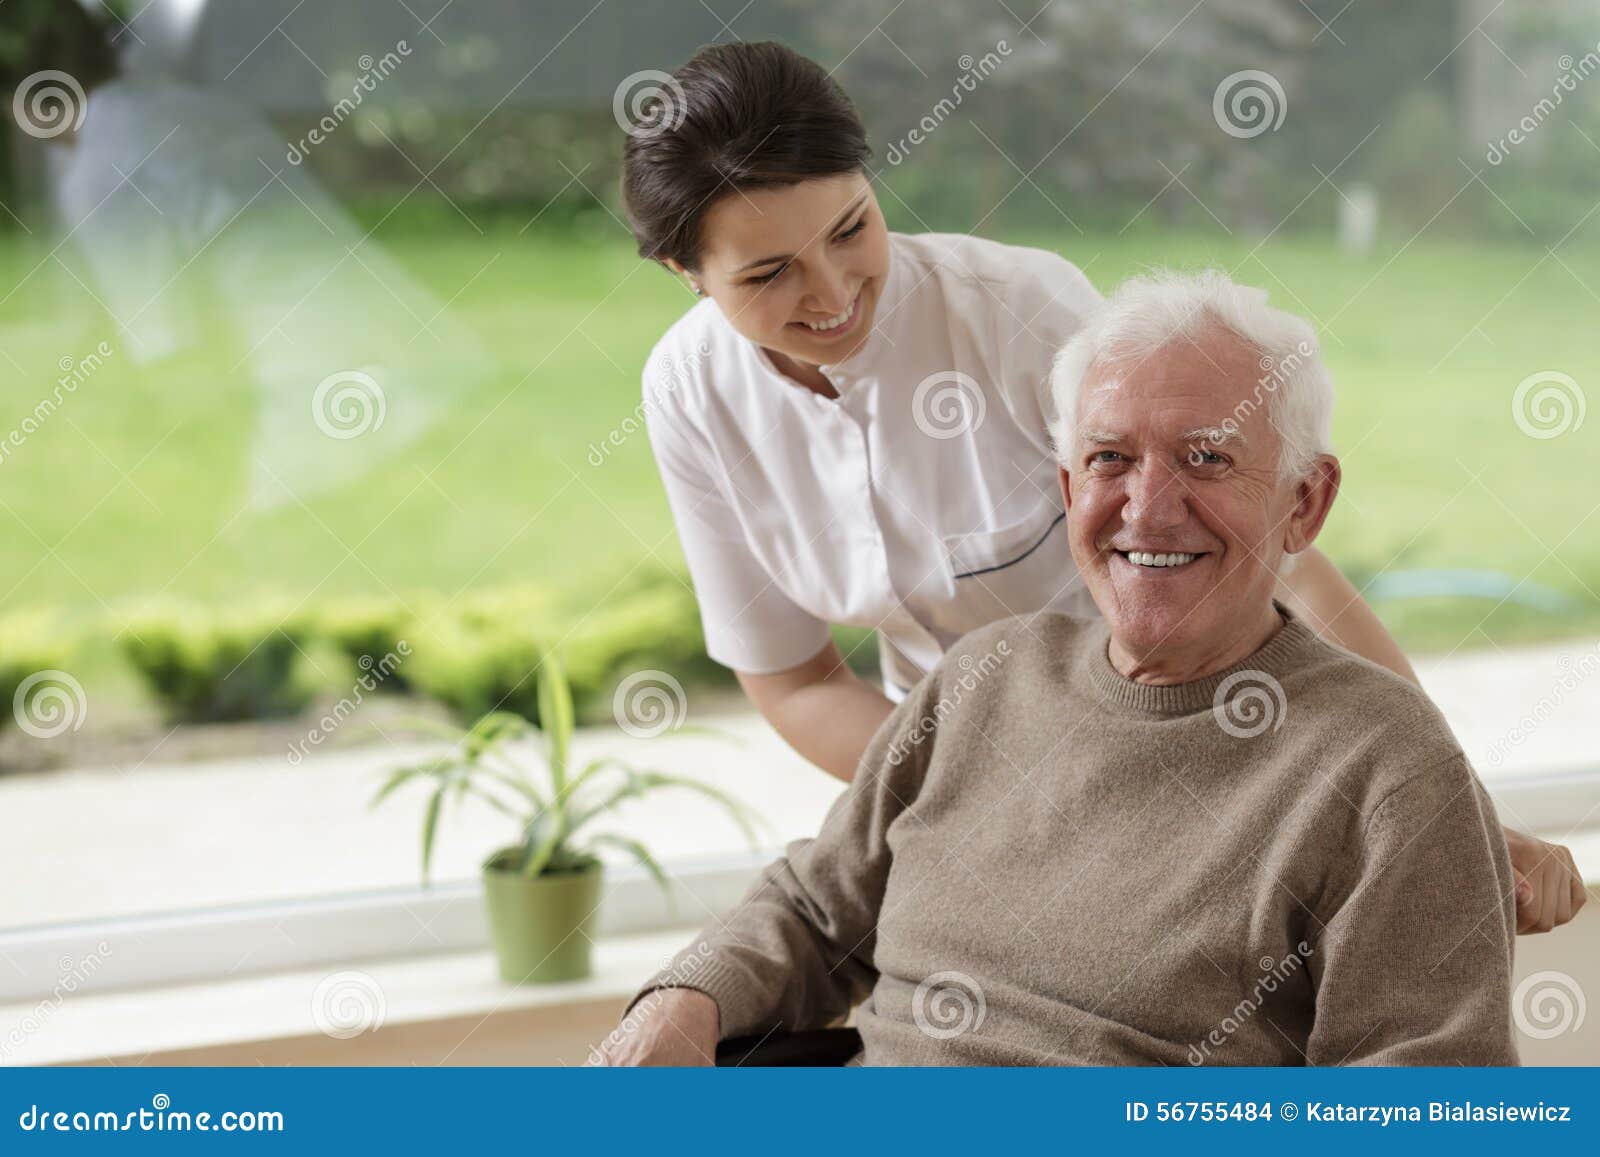 man staying in nursing home